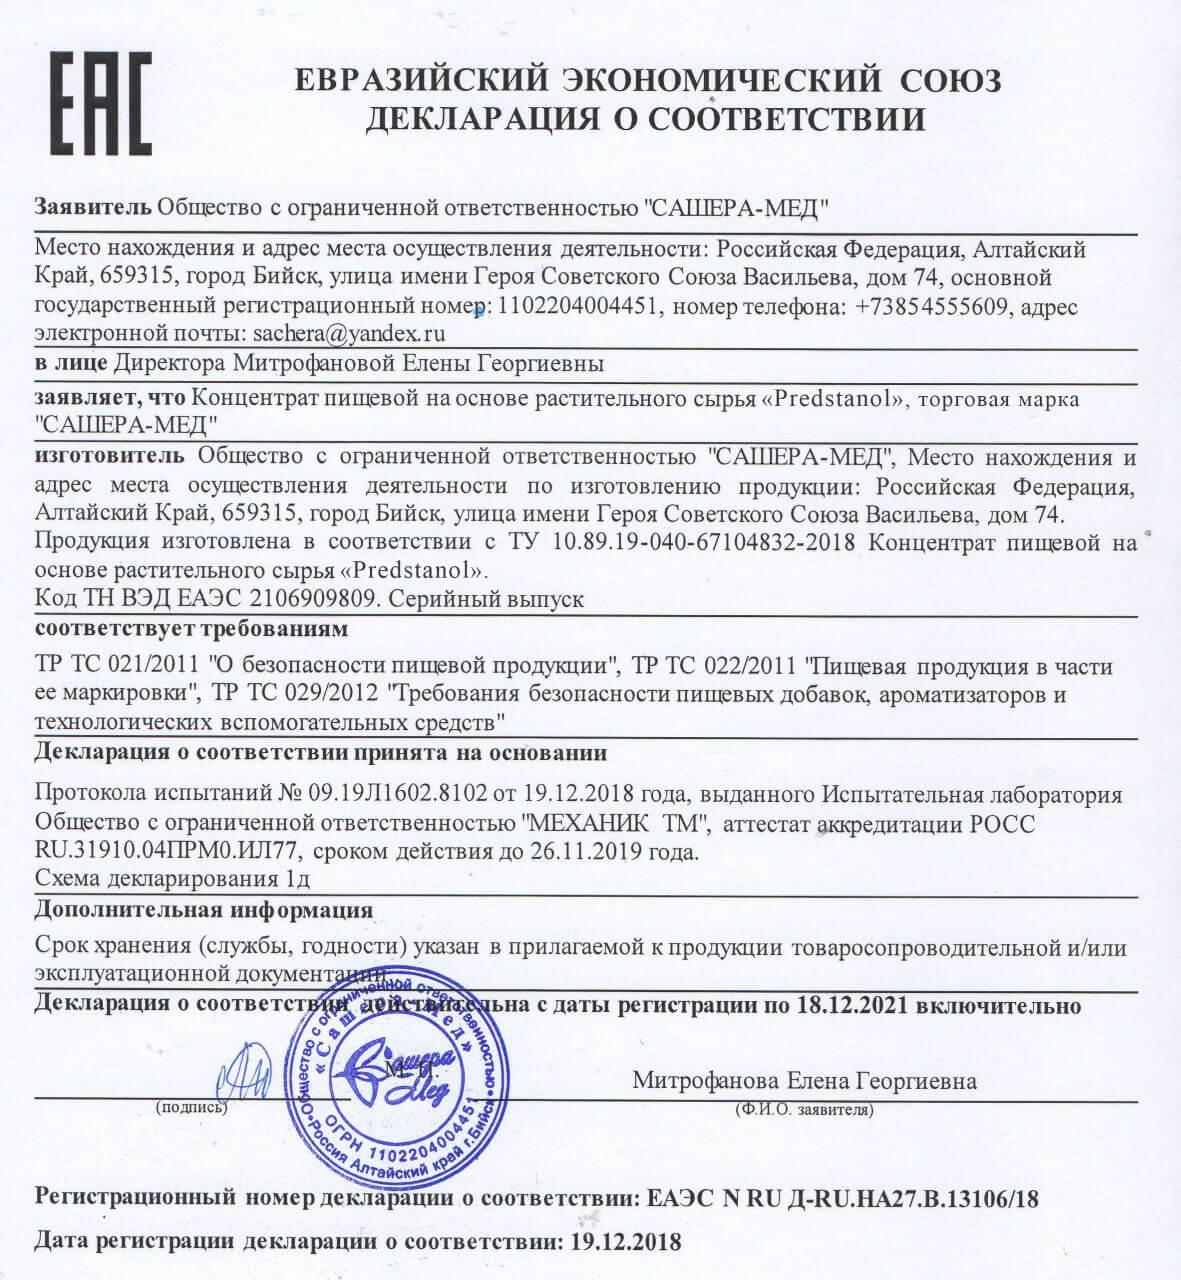 Сертификат на предстанол в Новосибирске